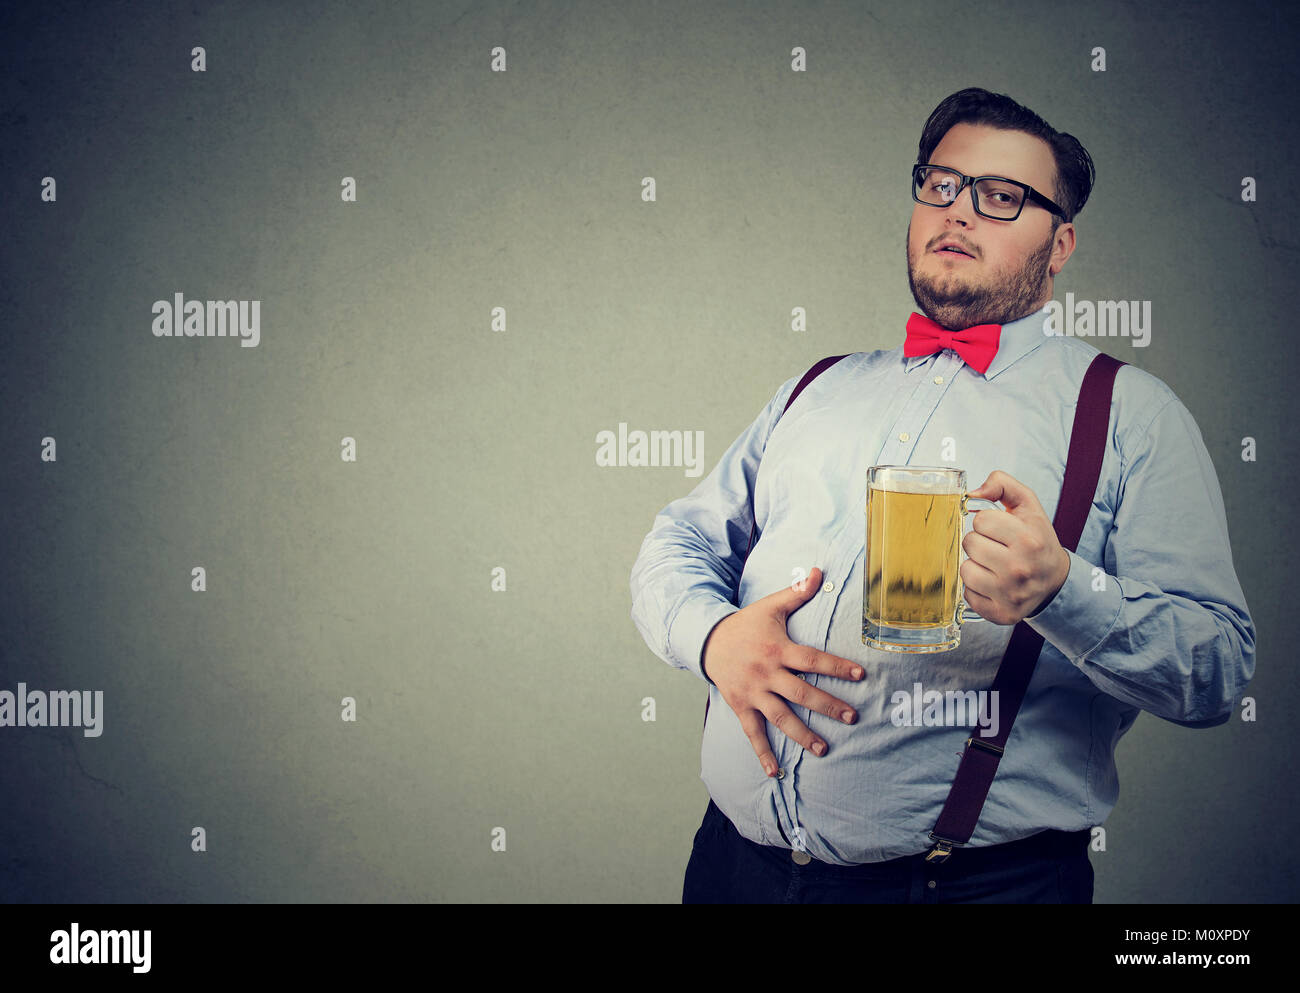 Junge übergewichtige Mann betrunken mit Bier potbelly haben. Stockfoto